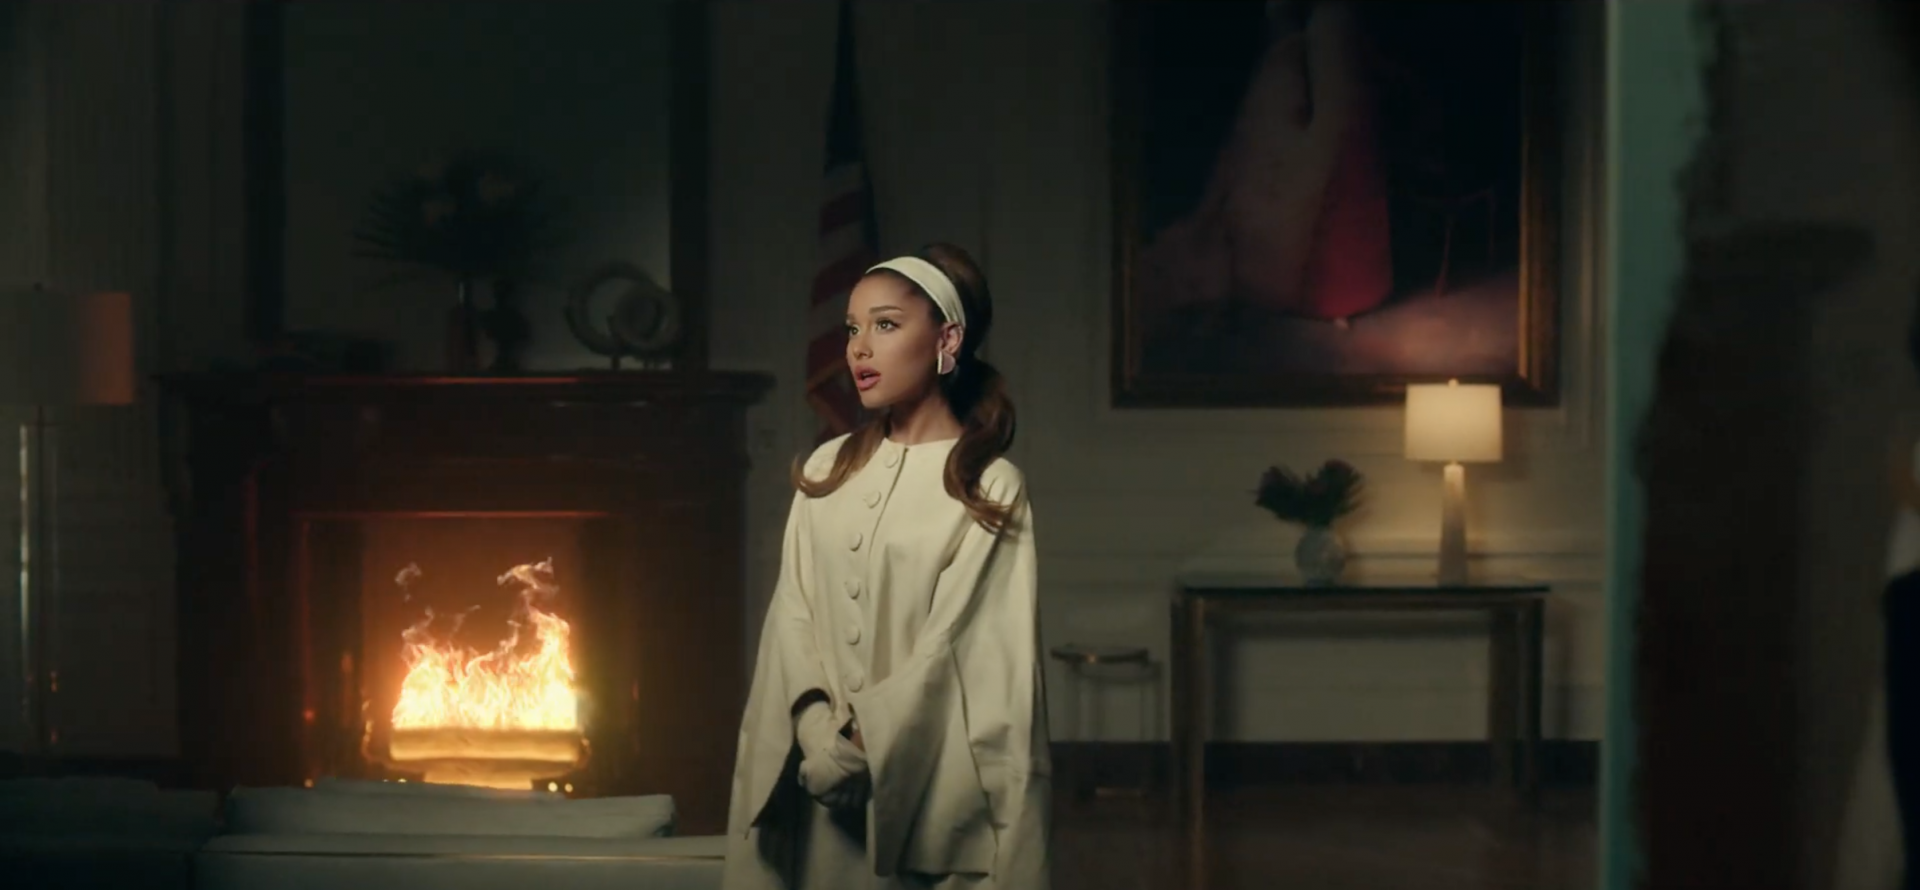 'Bóc giá' các item thời trang nghìn USD trong MV mới của Ariana Grande - Ảnh 13